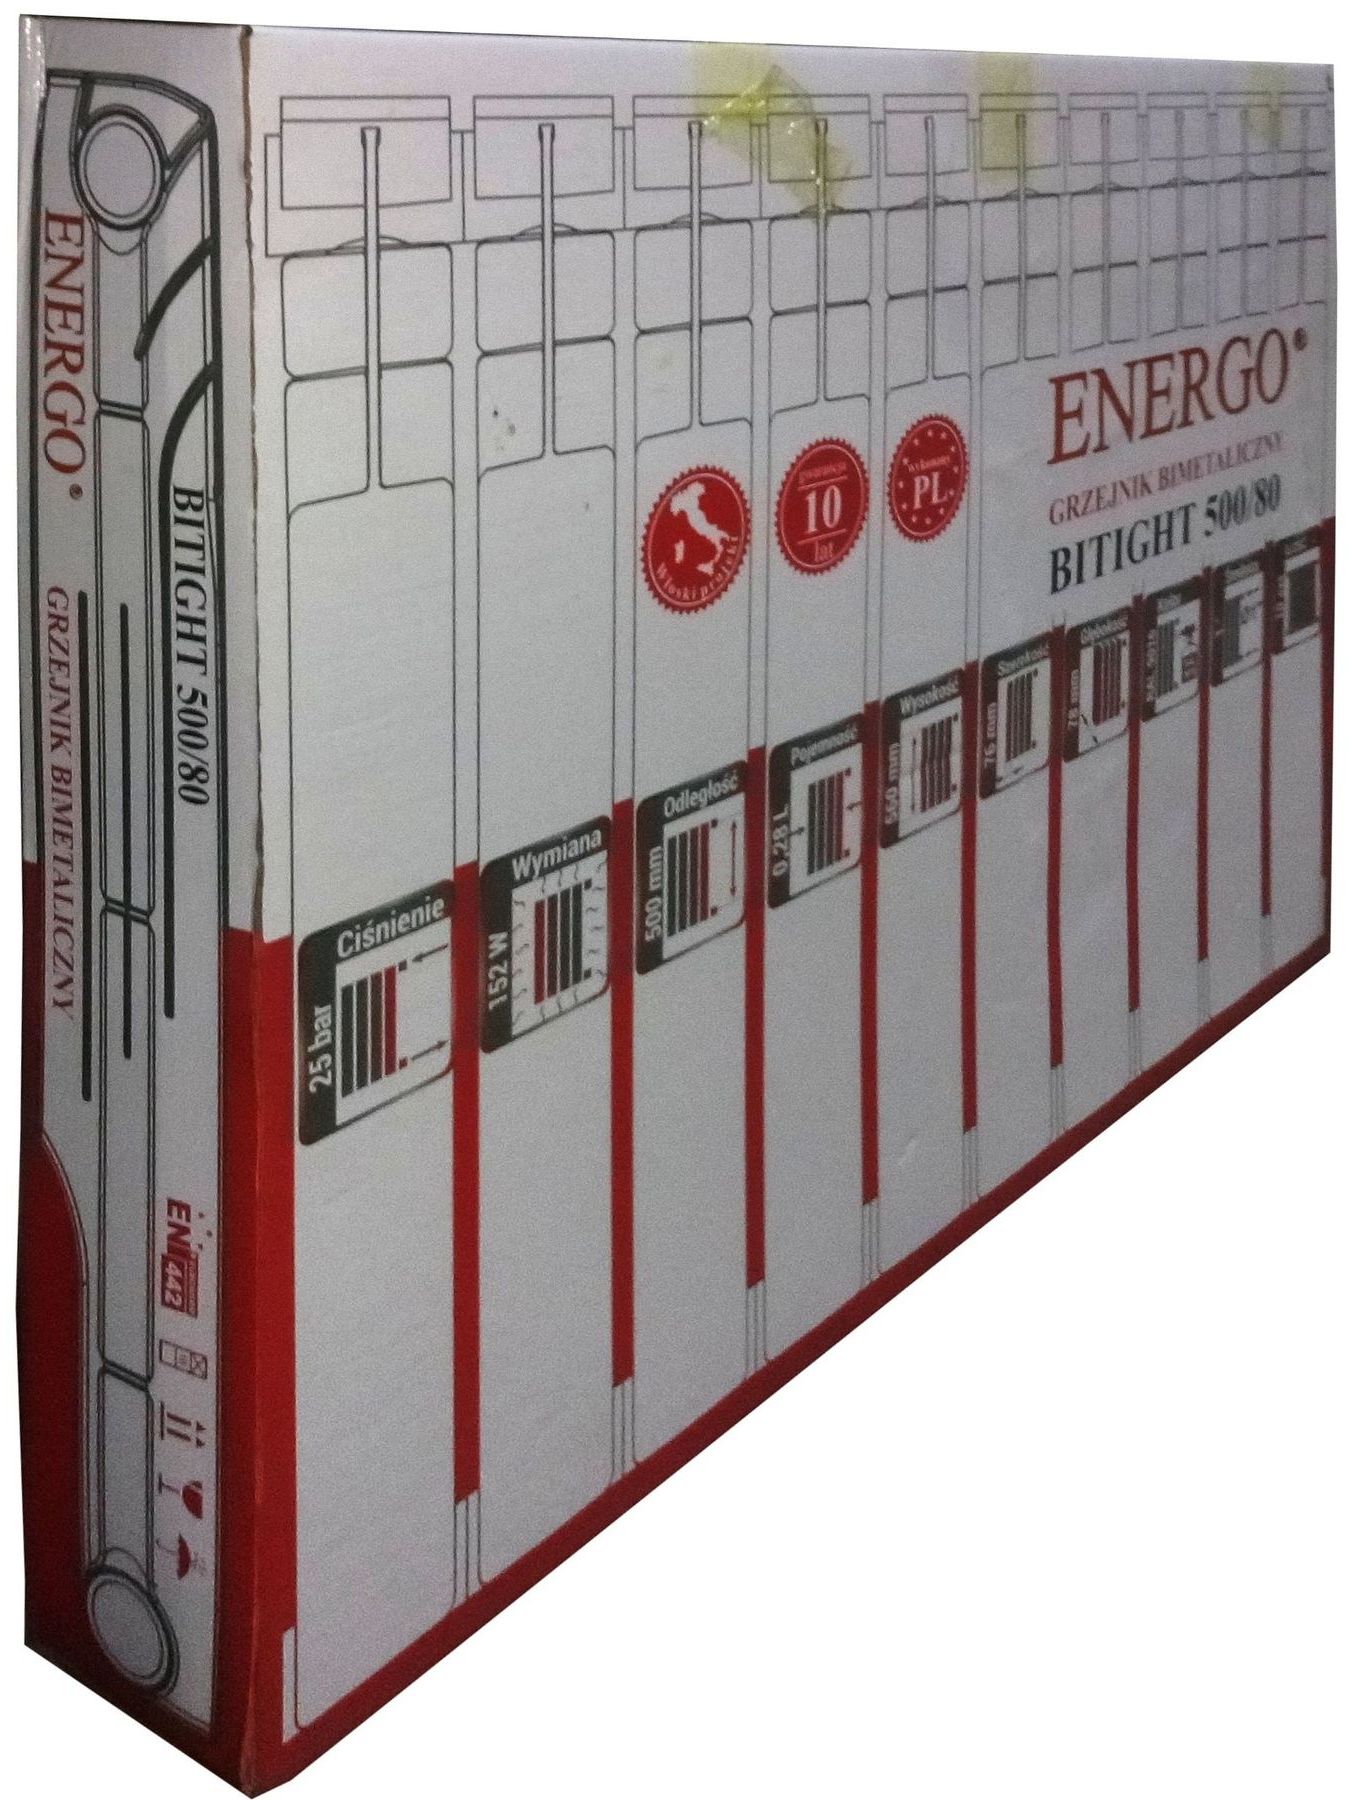 Радиатор для отопления Energo BITIGHT 500/80 (кратно 10) 000016866 инструкция - изображение 6